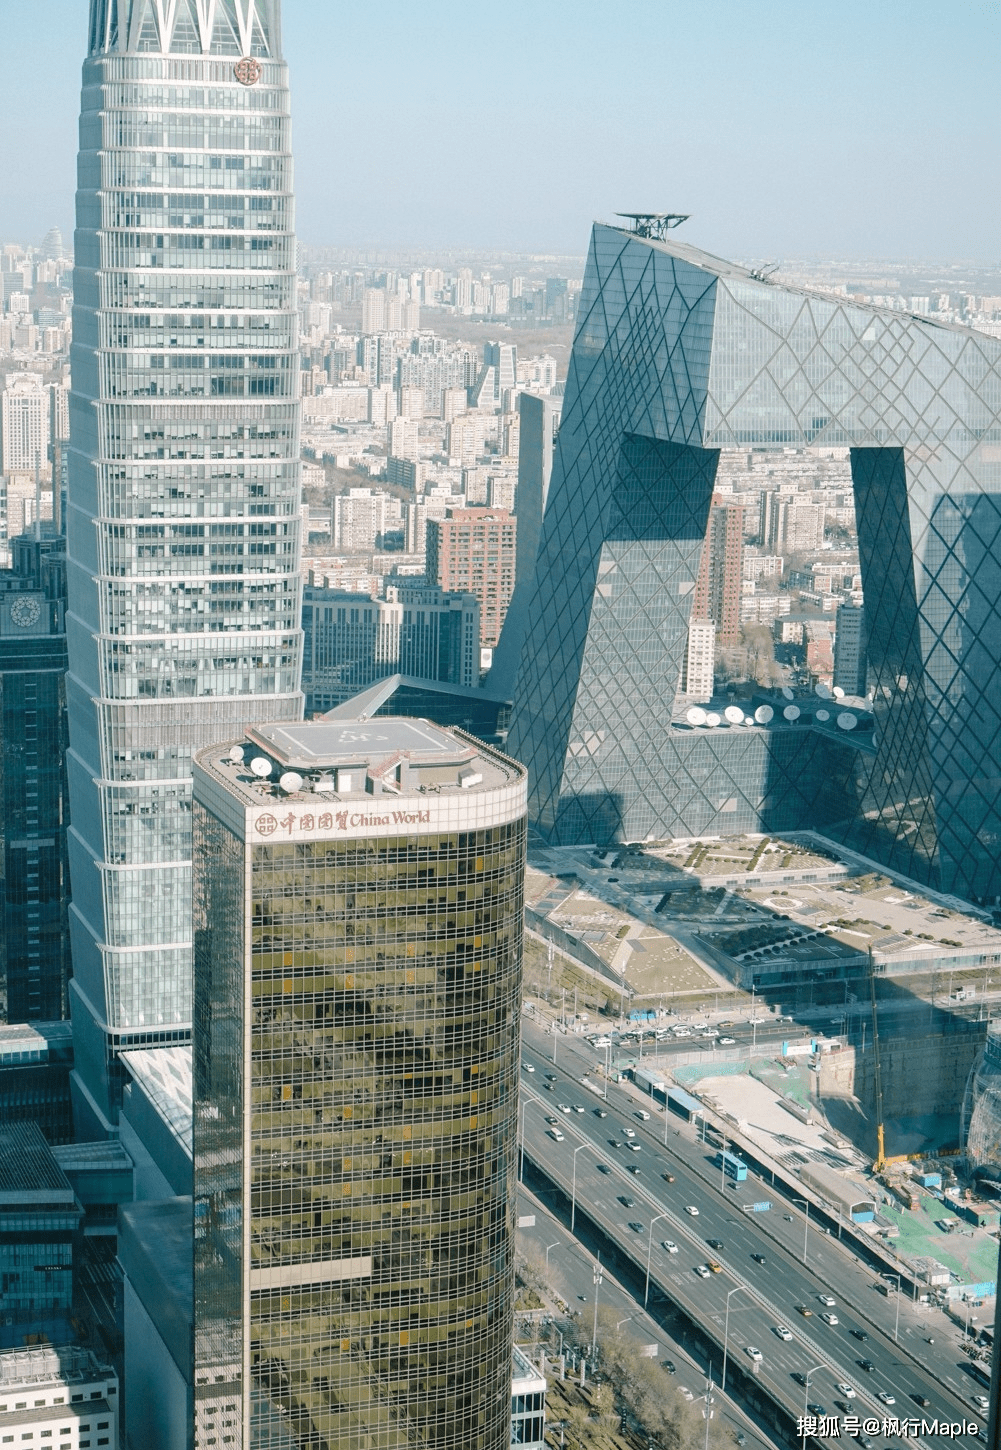 国贸,北京一大地标,新起的高楼一栋又一栋